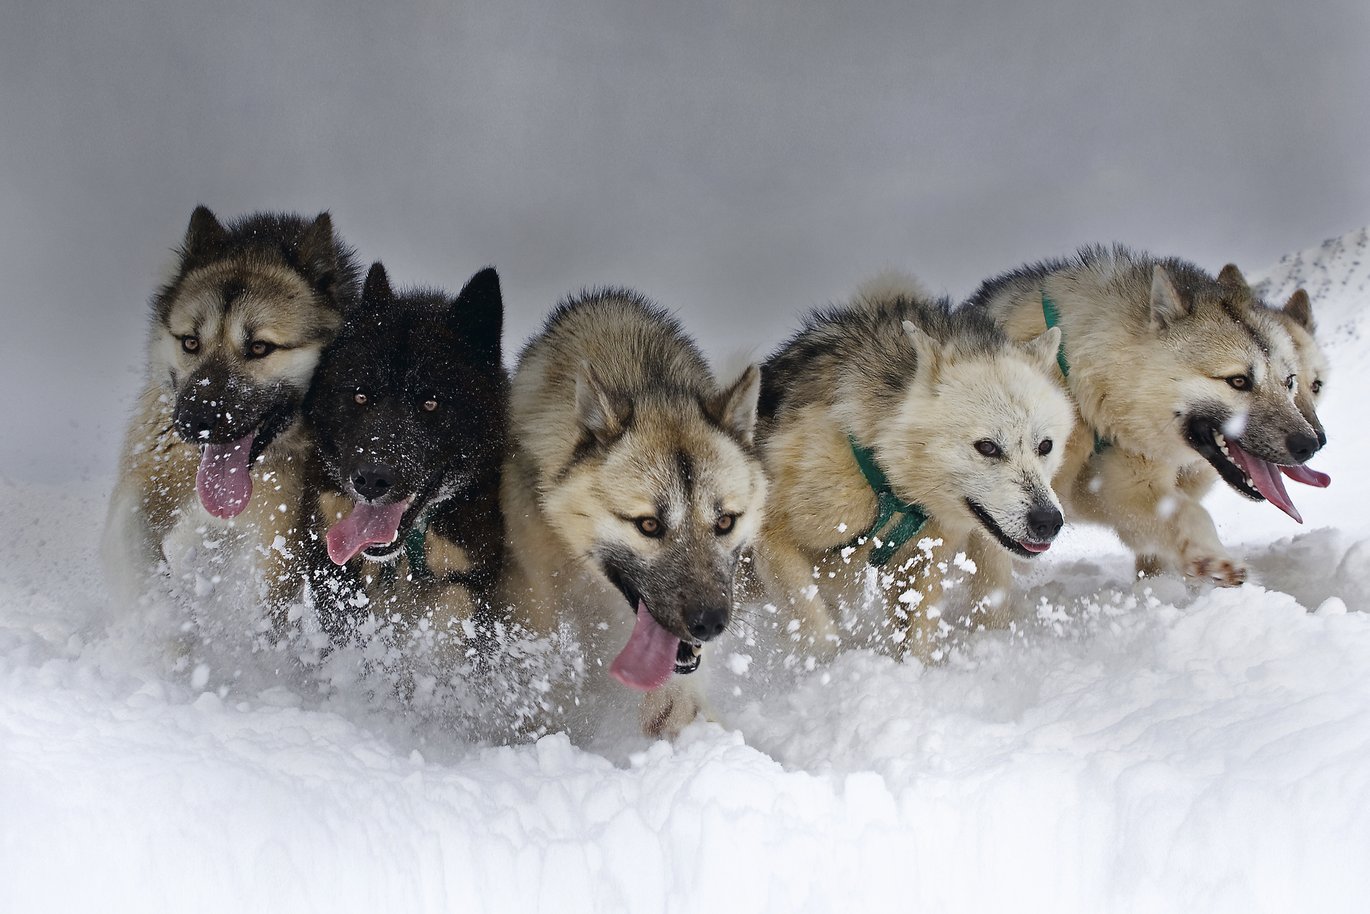 [Translate to English:] Seks slædehunde, som trækker en slæde, løber gennem sneen.